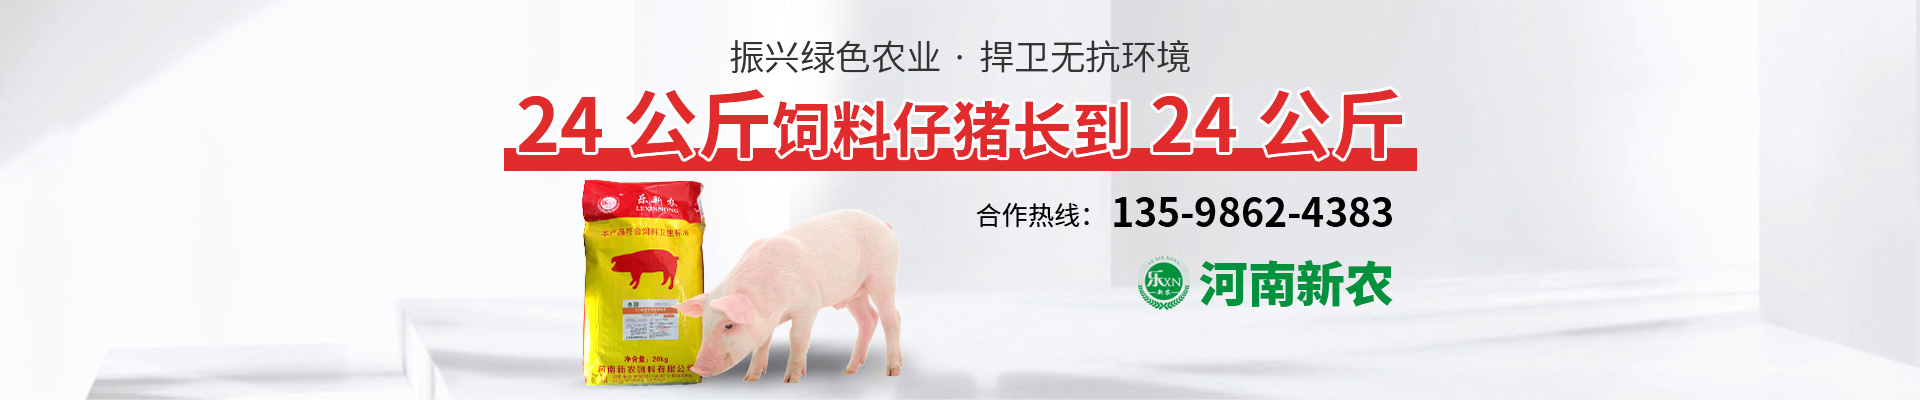 【48812】各国生猪养殖瘦肉率、保育至育肥期死亡率、年产猪肉酮体量比照剖析